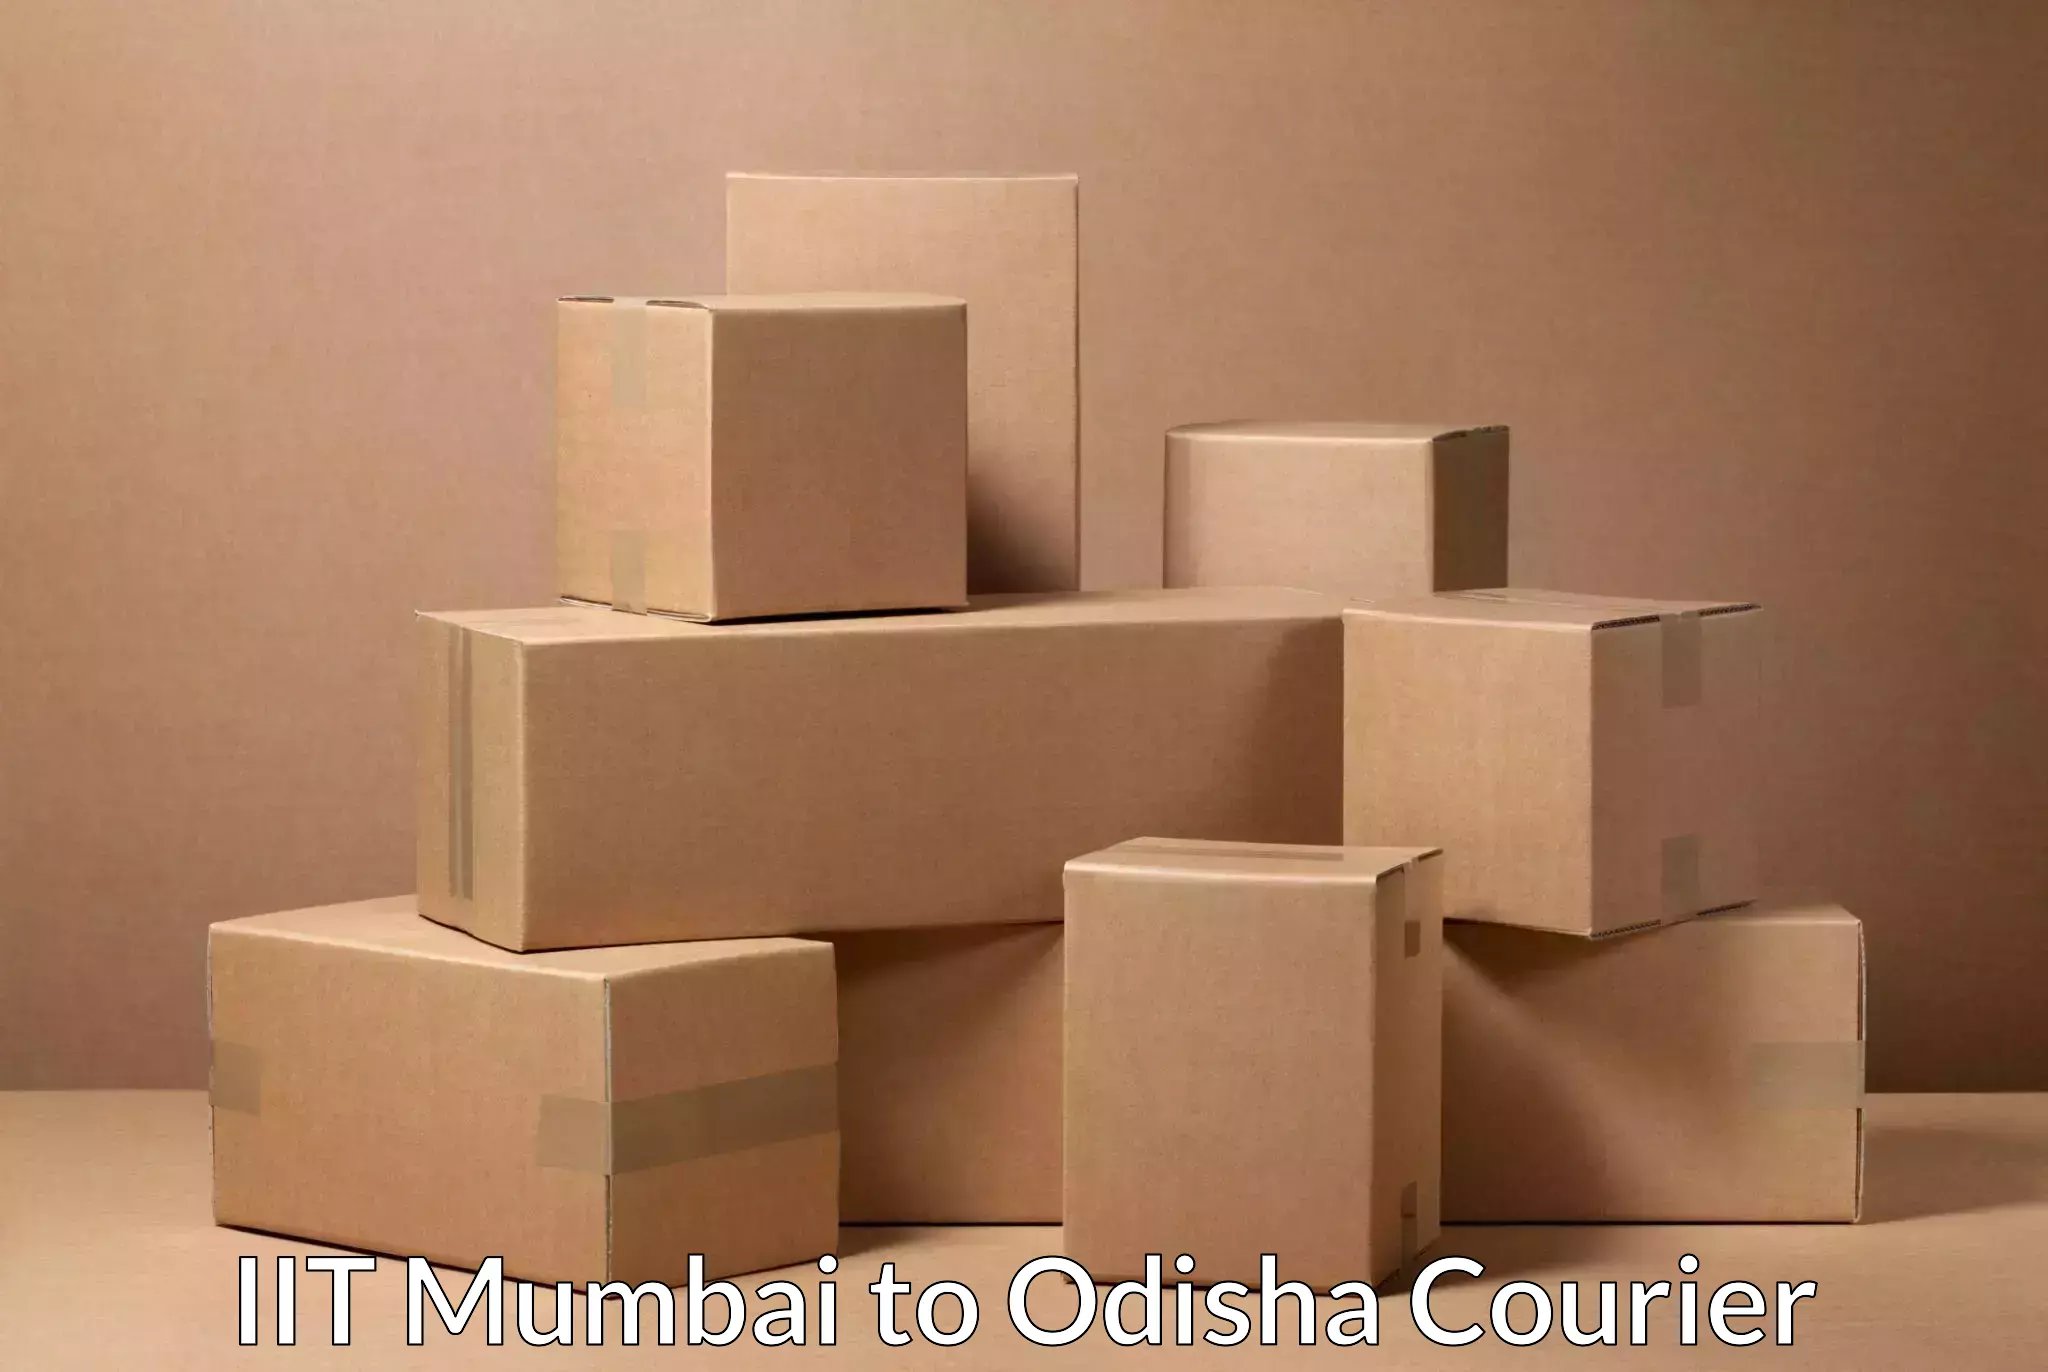 Courier service partnerships IIT Mumbai to Udala